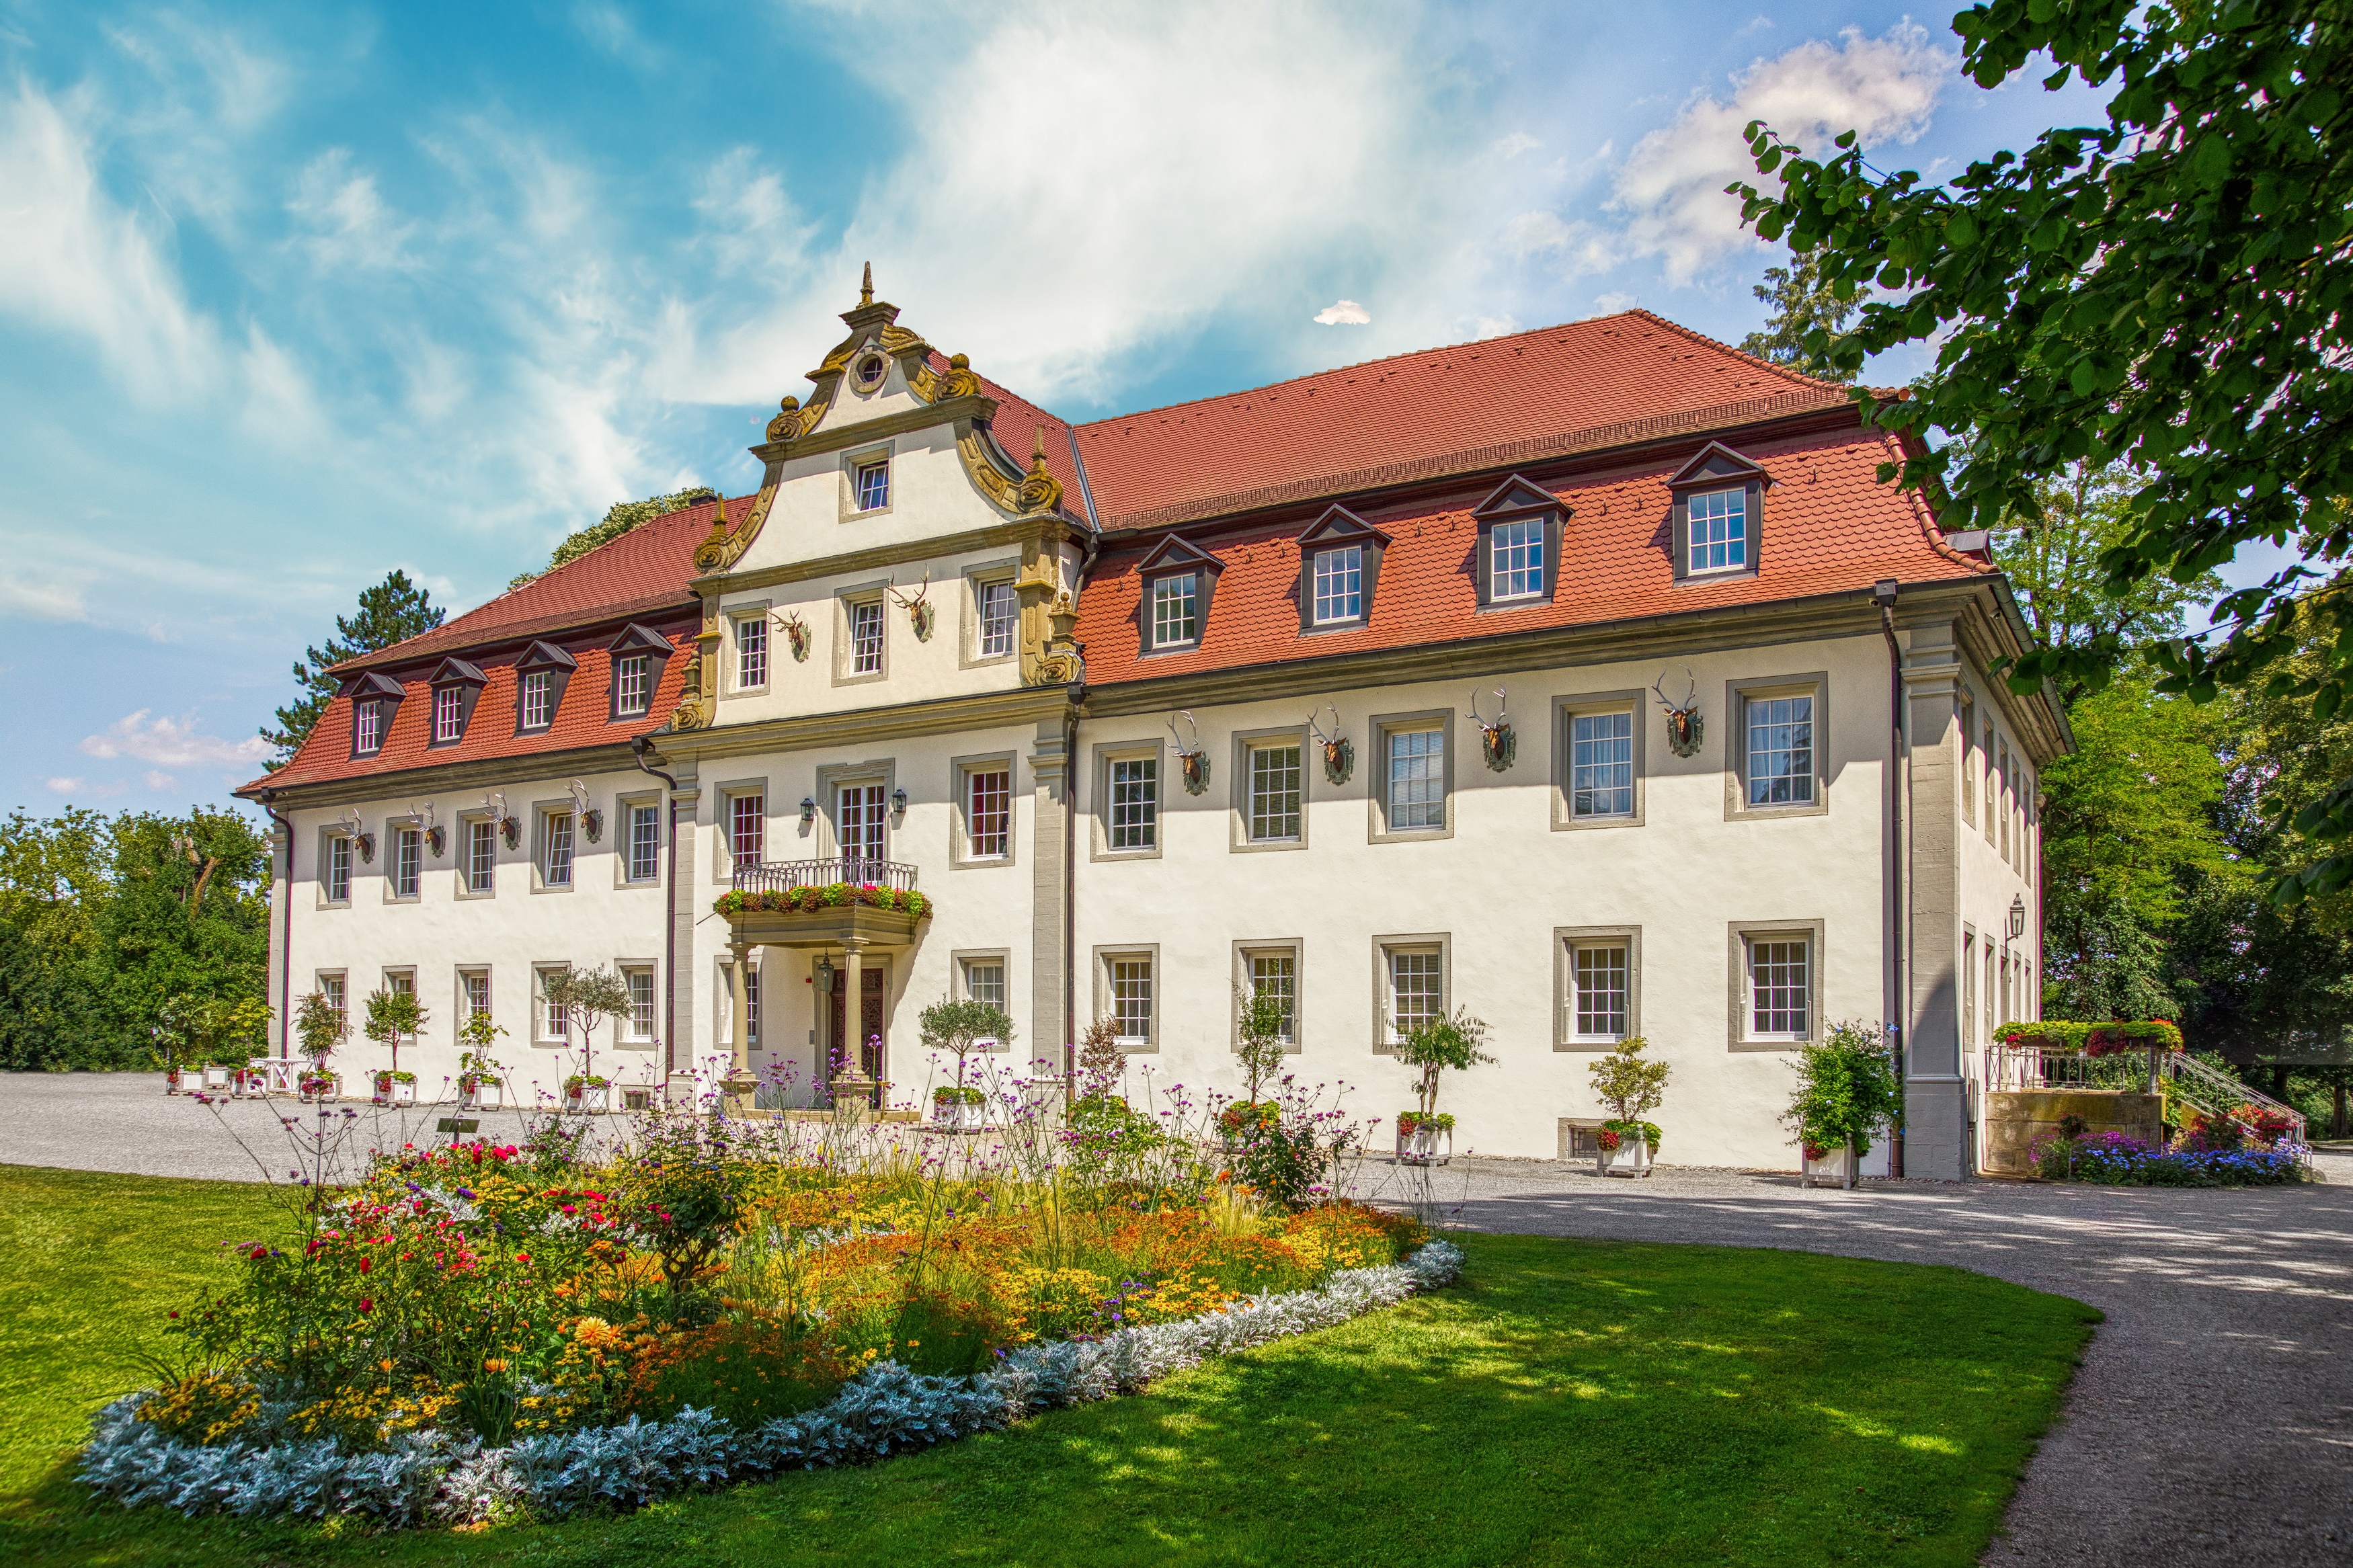 Jagdschloss Schlosshotel Friedrichsruhe, Zweiflingen.
